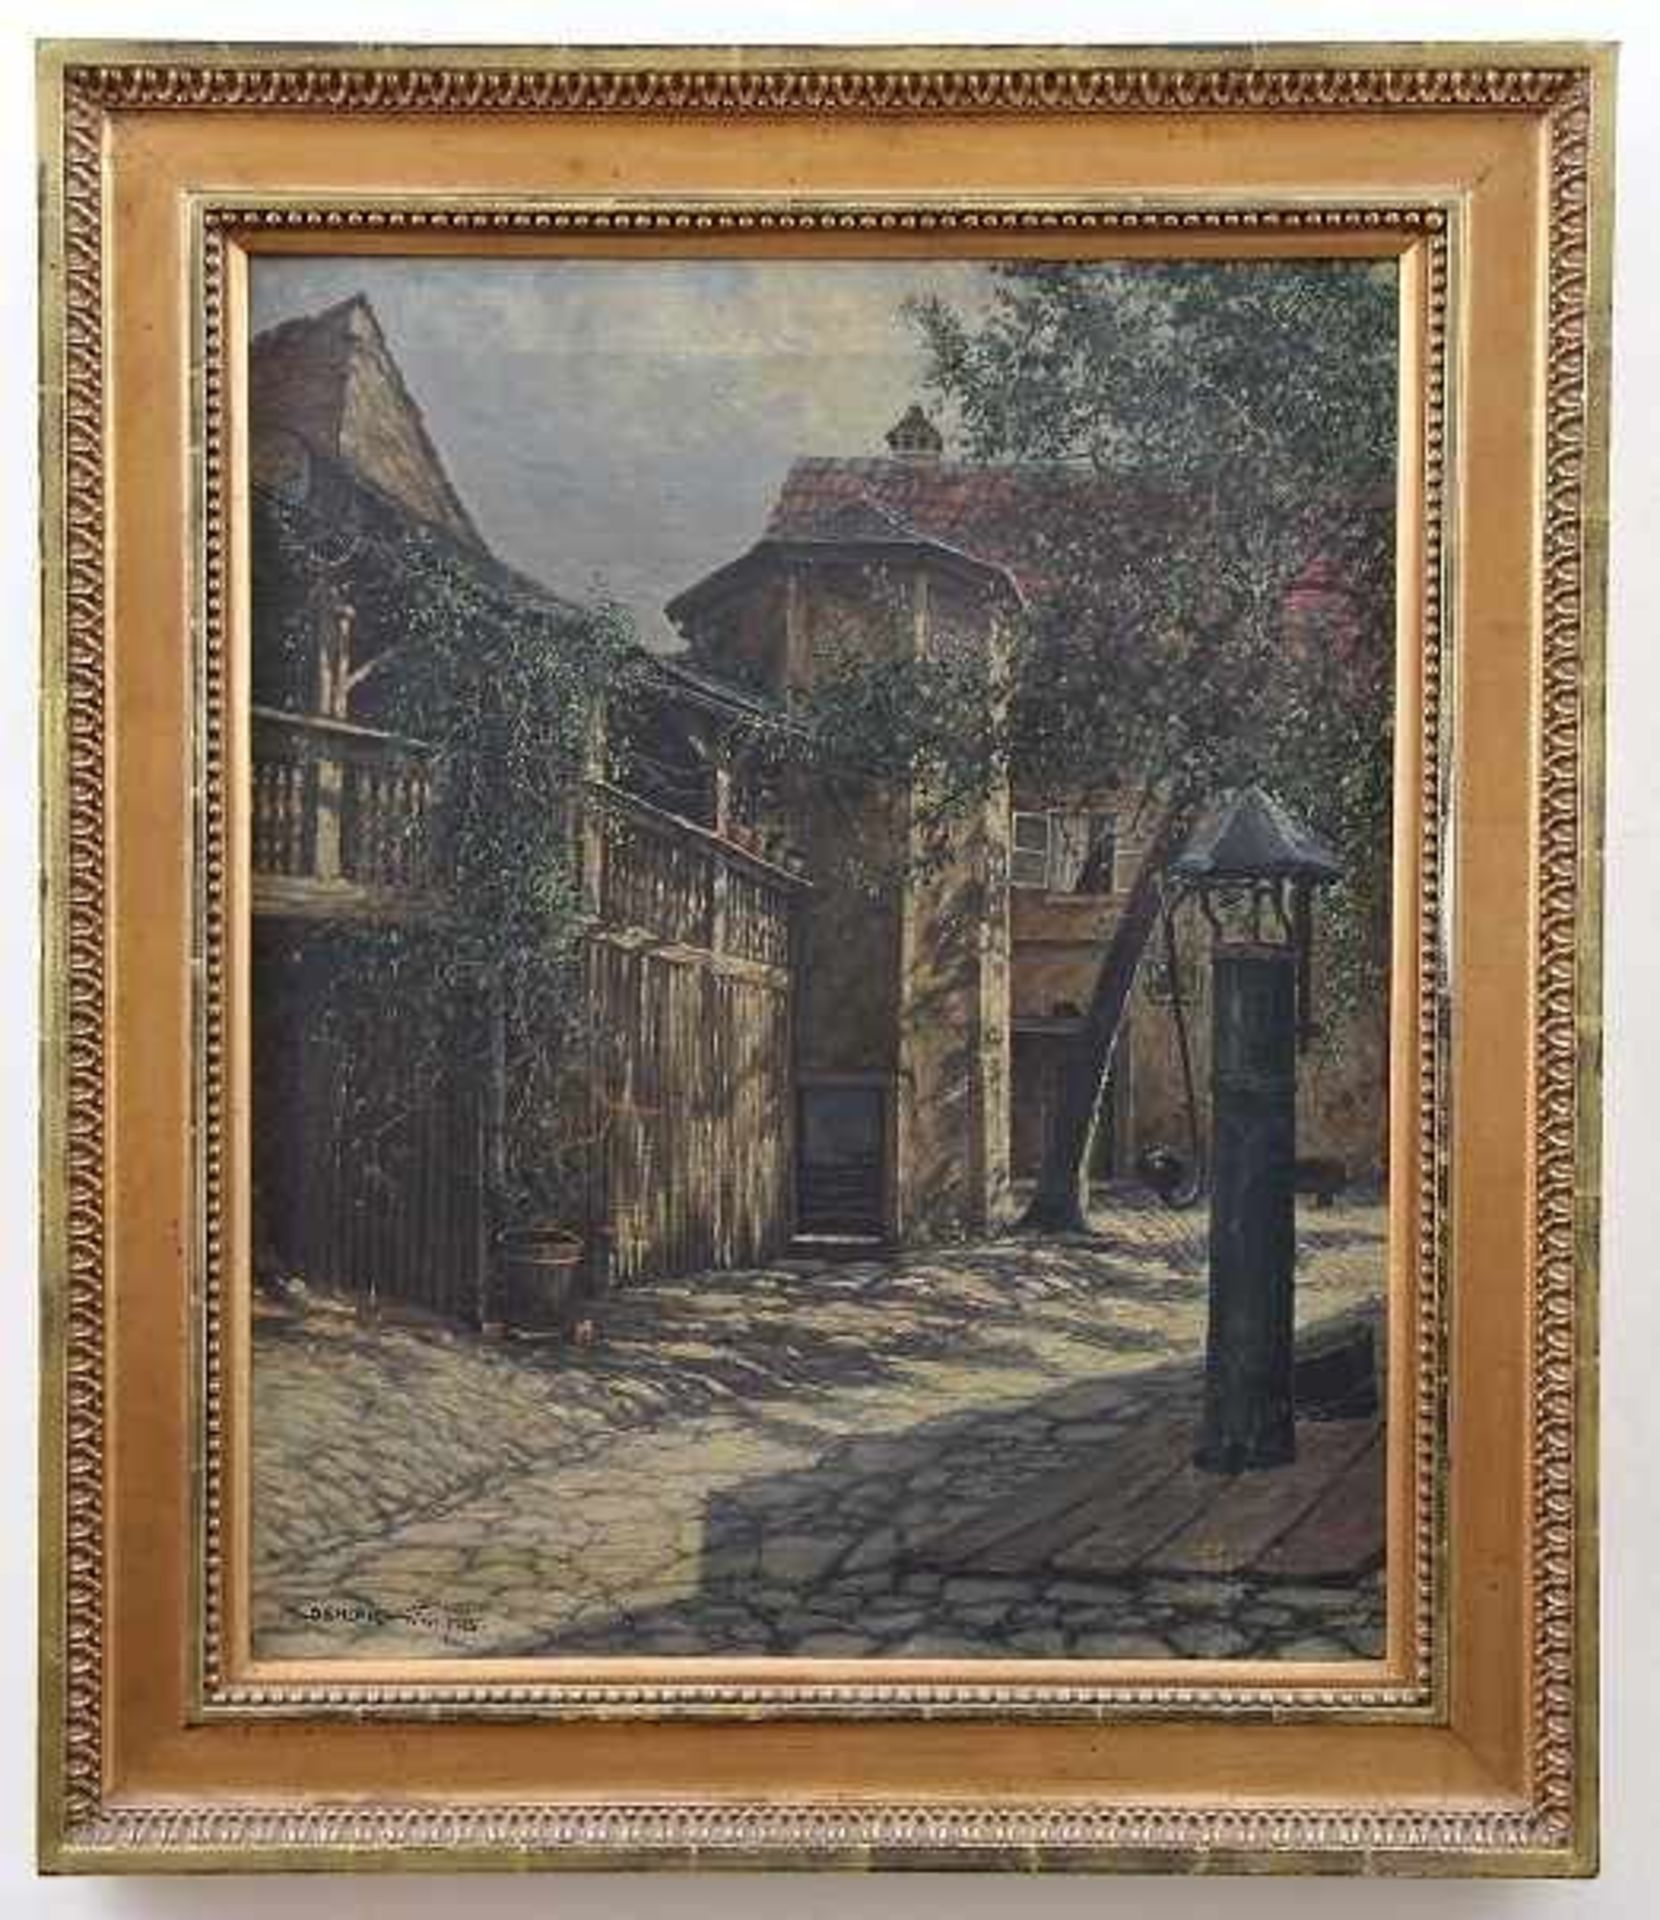 Oehler, Max (Blessenbach / Taunus 1875 - 1946 Weimar) Gemälde "Kratowscher Hof in Weimar", Öl auf